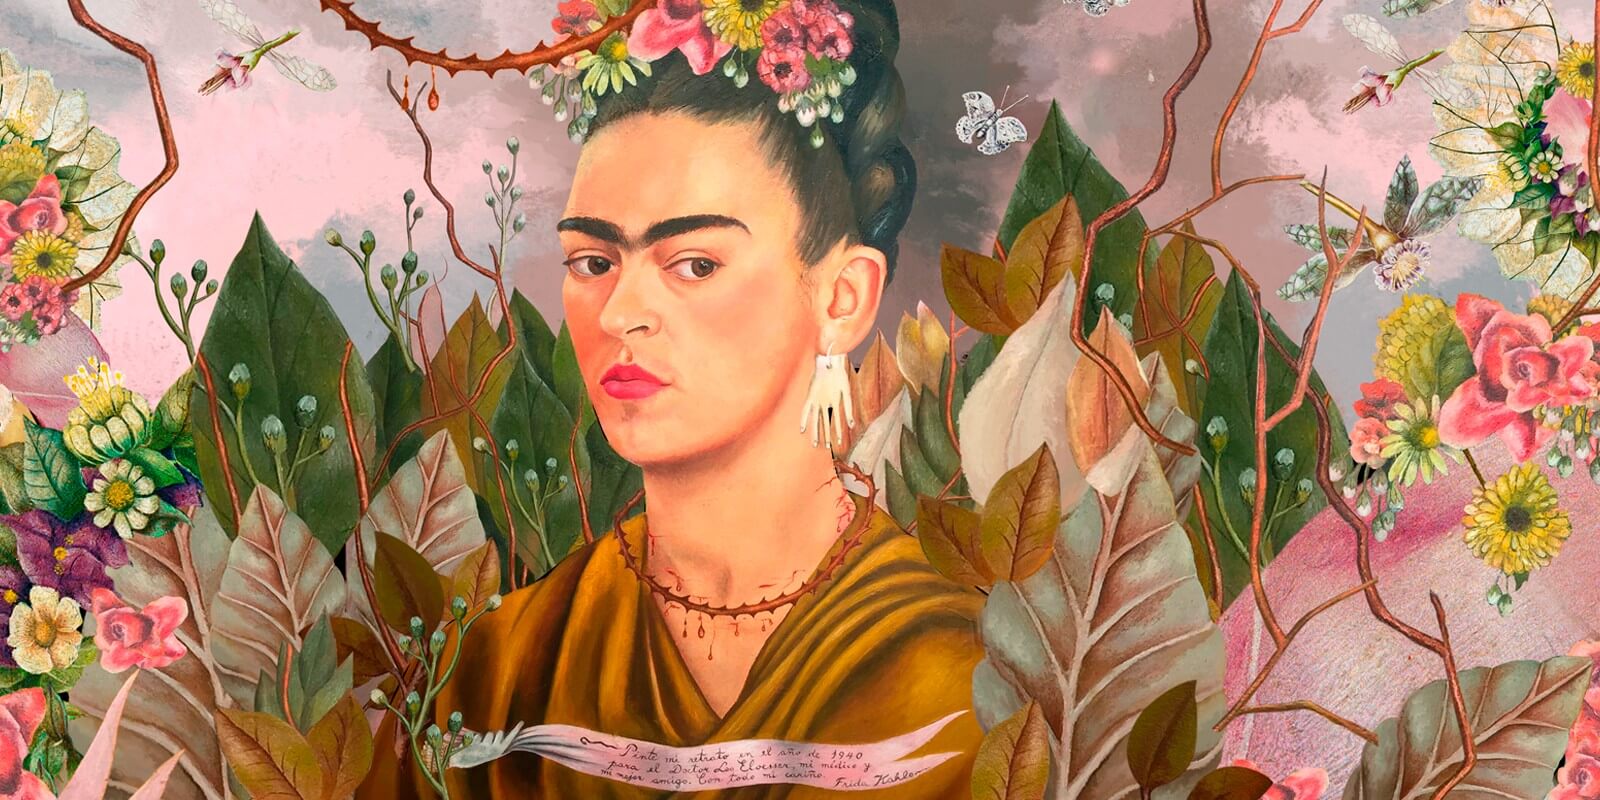 Madrid acoge la exposición “Vida y Obra de Frida Kahlo”